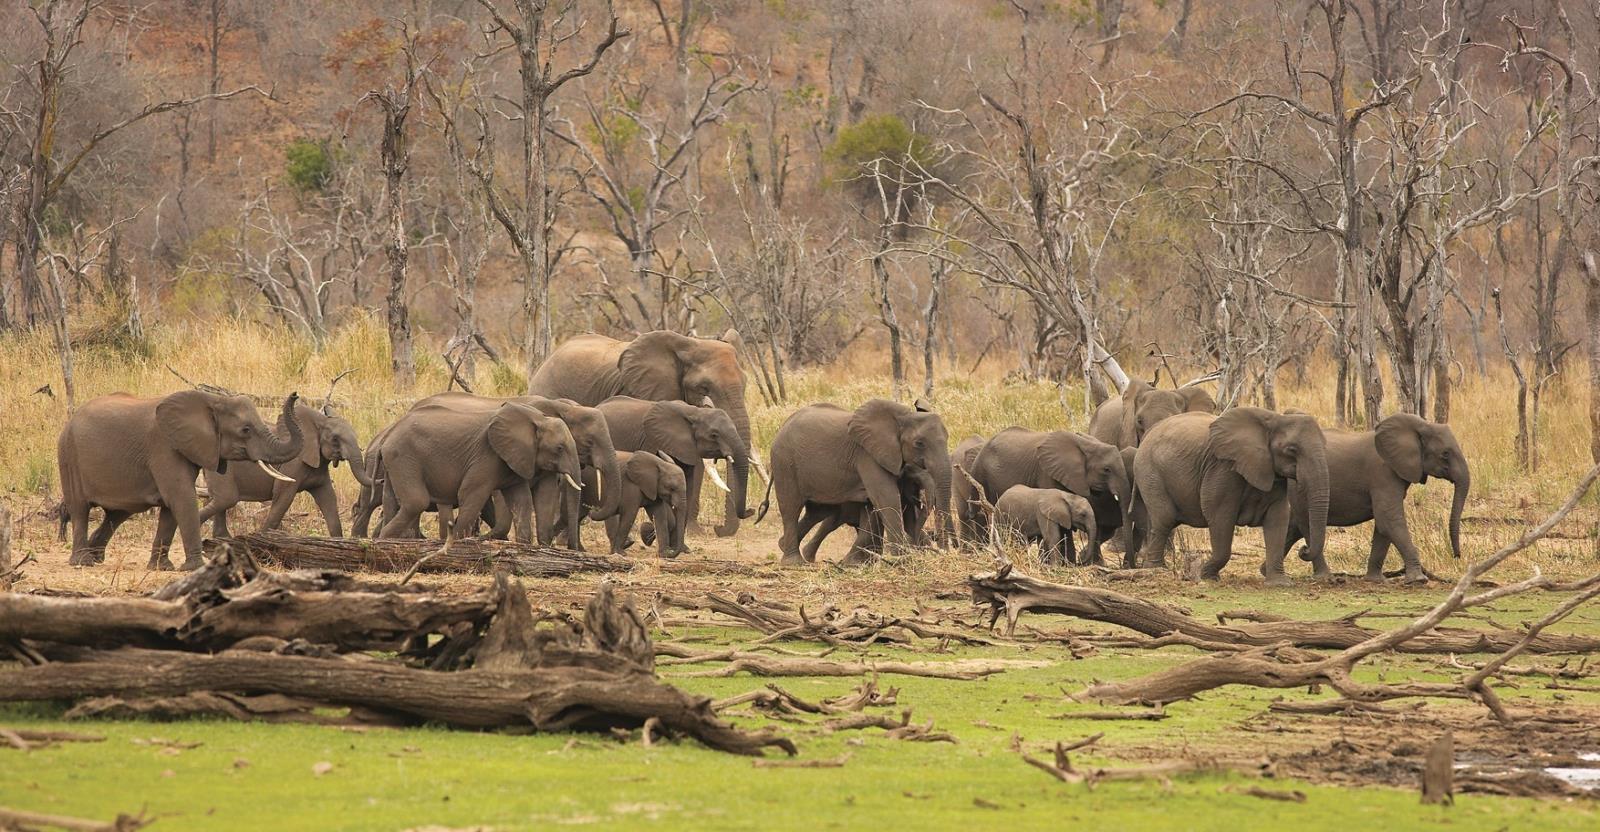 Hwange elephants - Zimbabwe and Mozambique